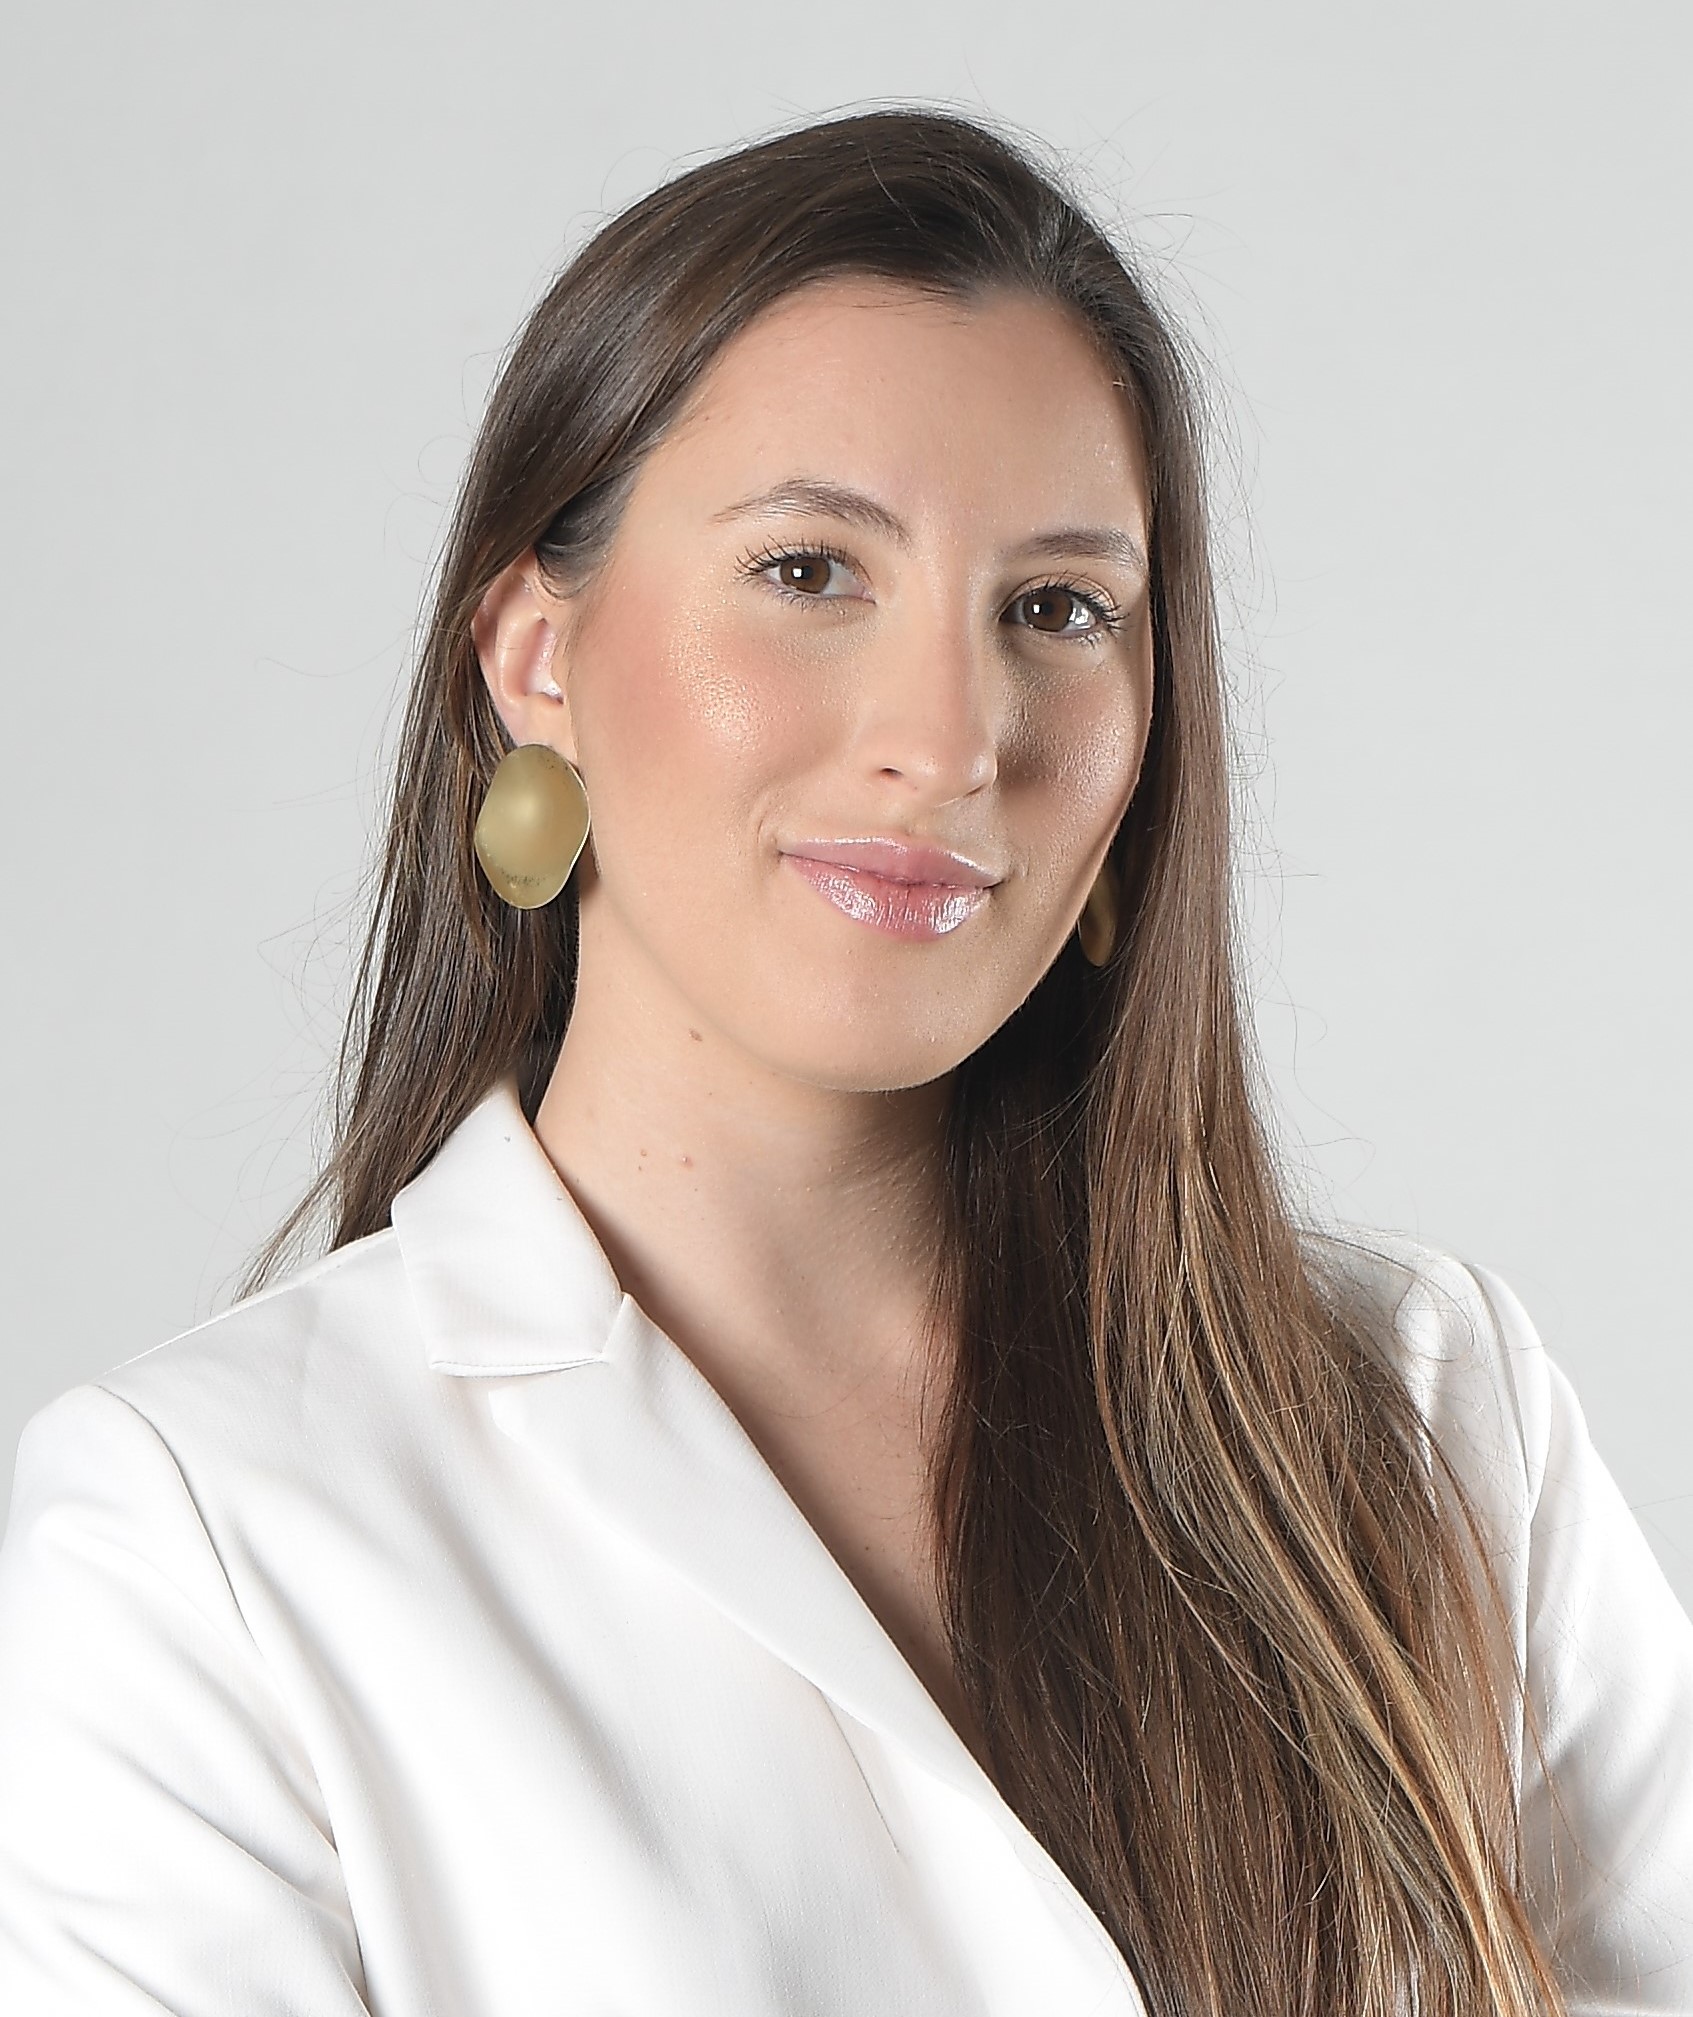 Dra. Paola Brocanello